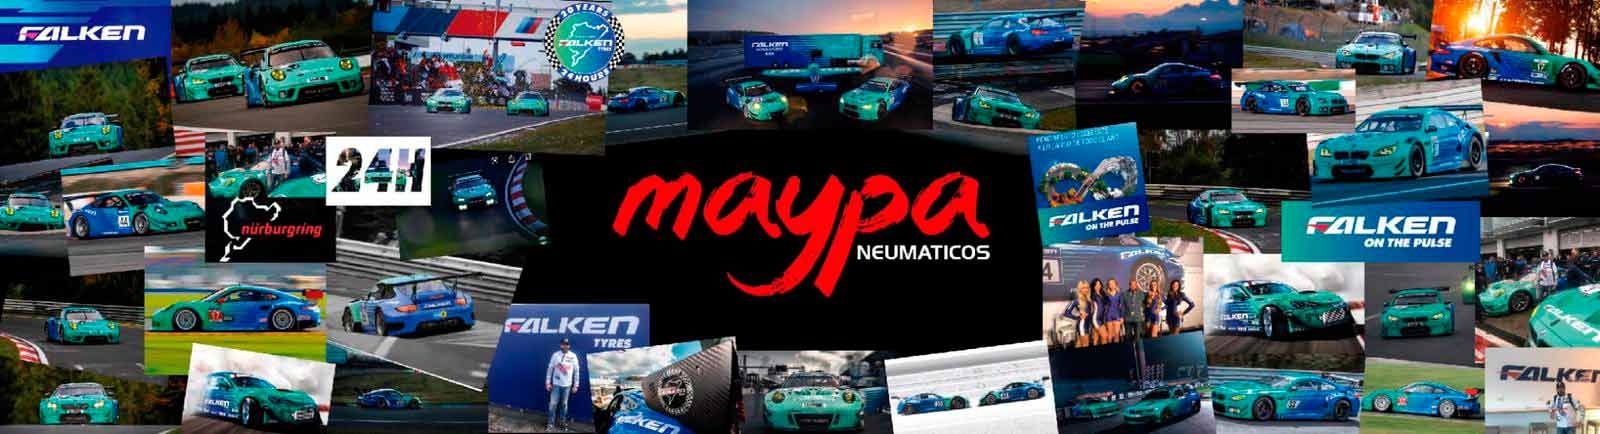 Maypa Neumáticos carros y logo